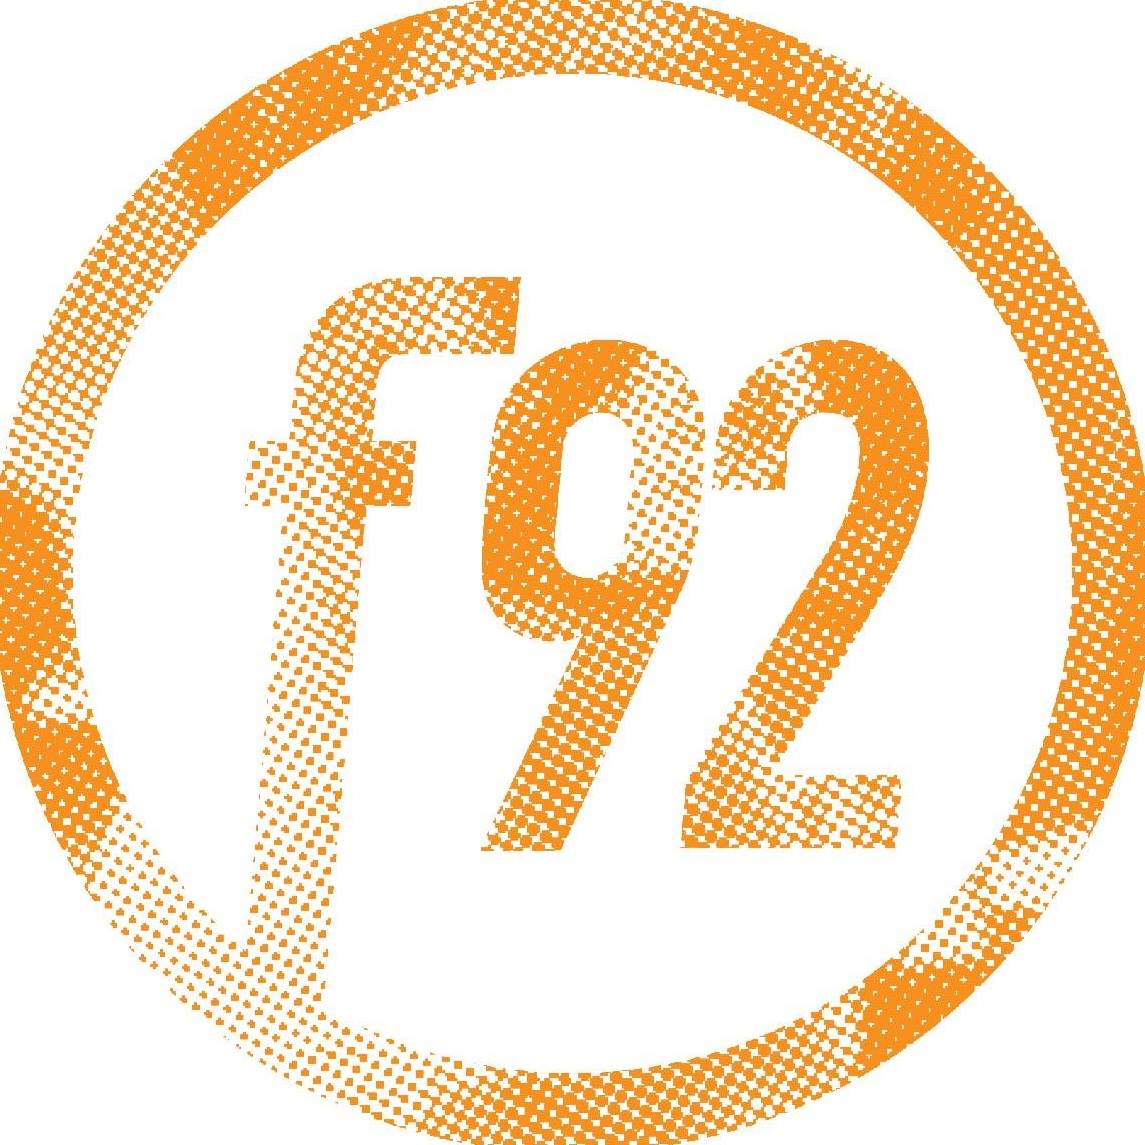 Company logo of Fusion92